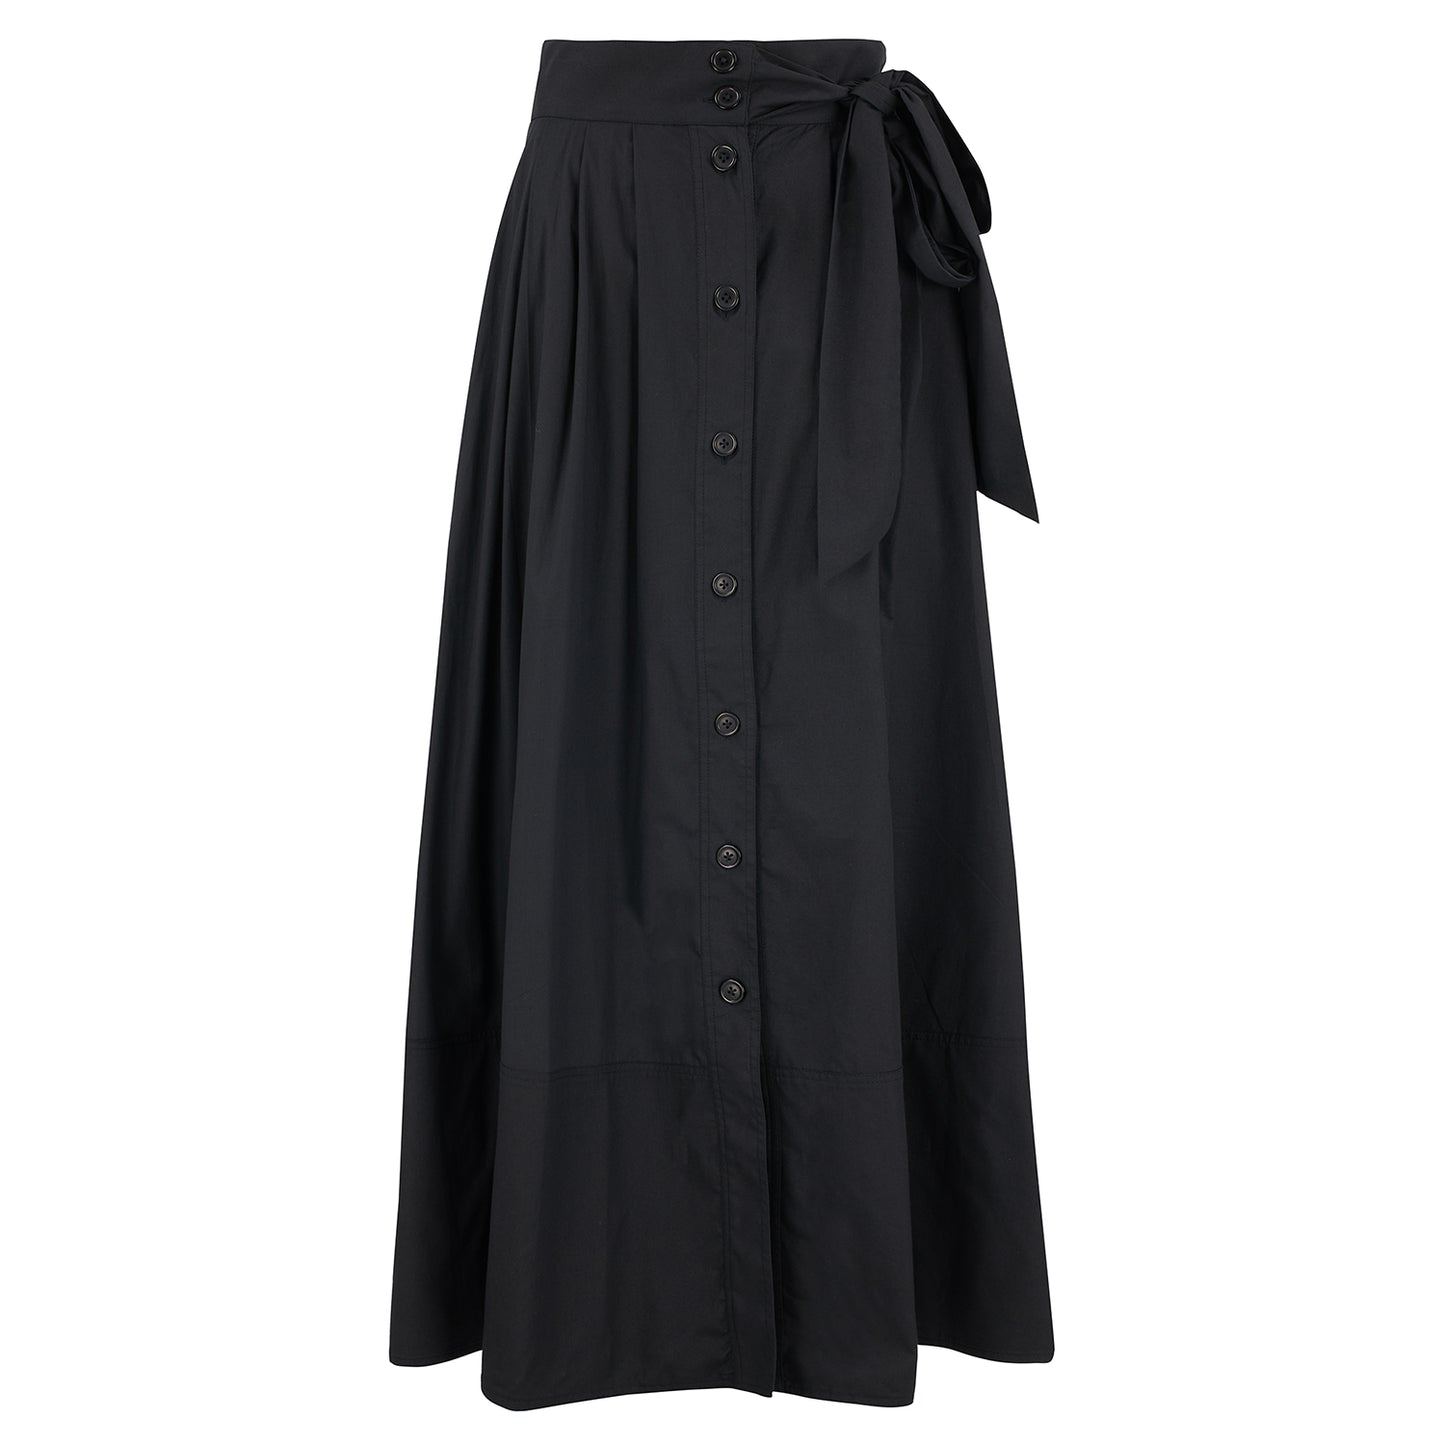 Florence Skirt in black